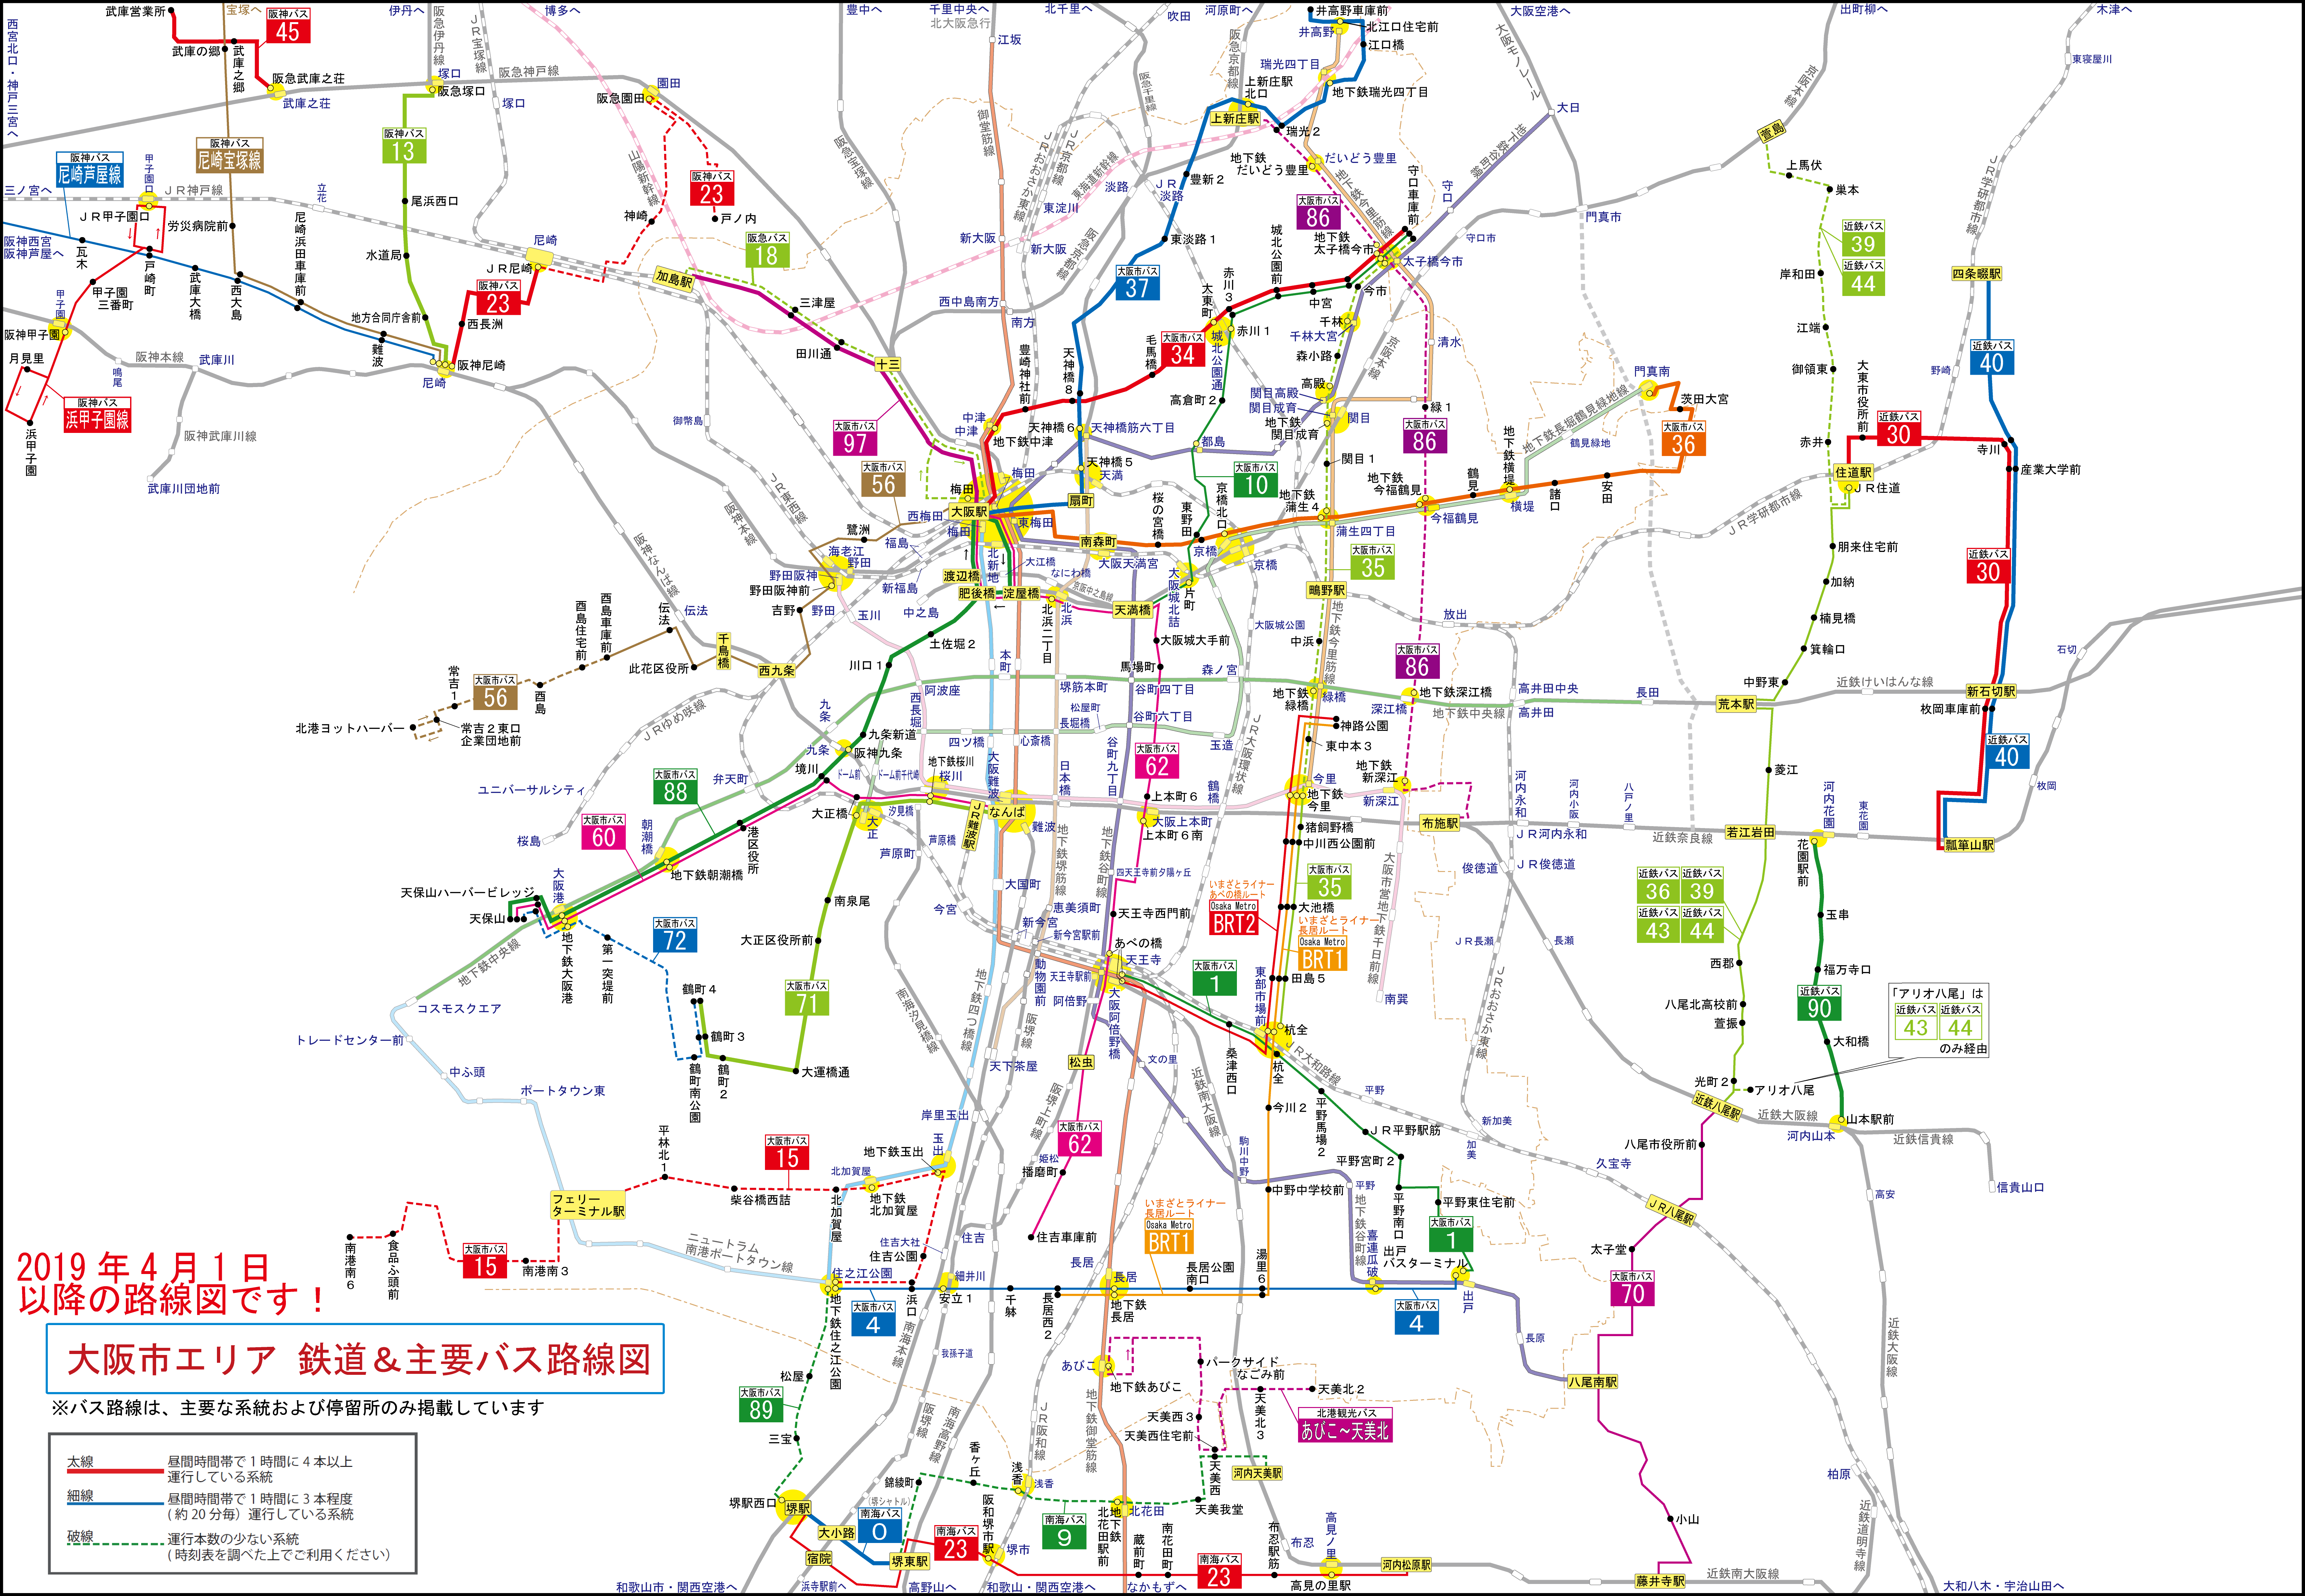 大阪市エリア 鉄道 主要バス路線図 旅とまちなみとパインどうでしょう